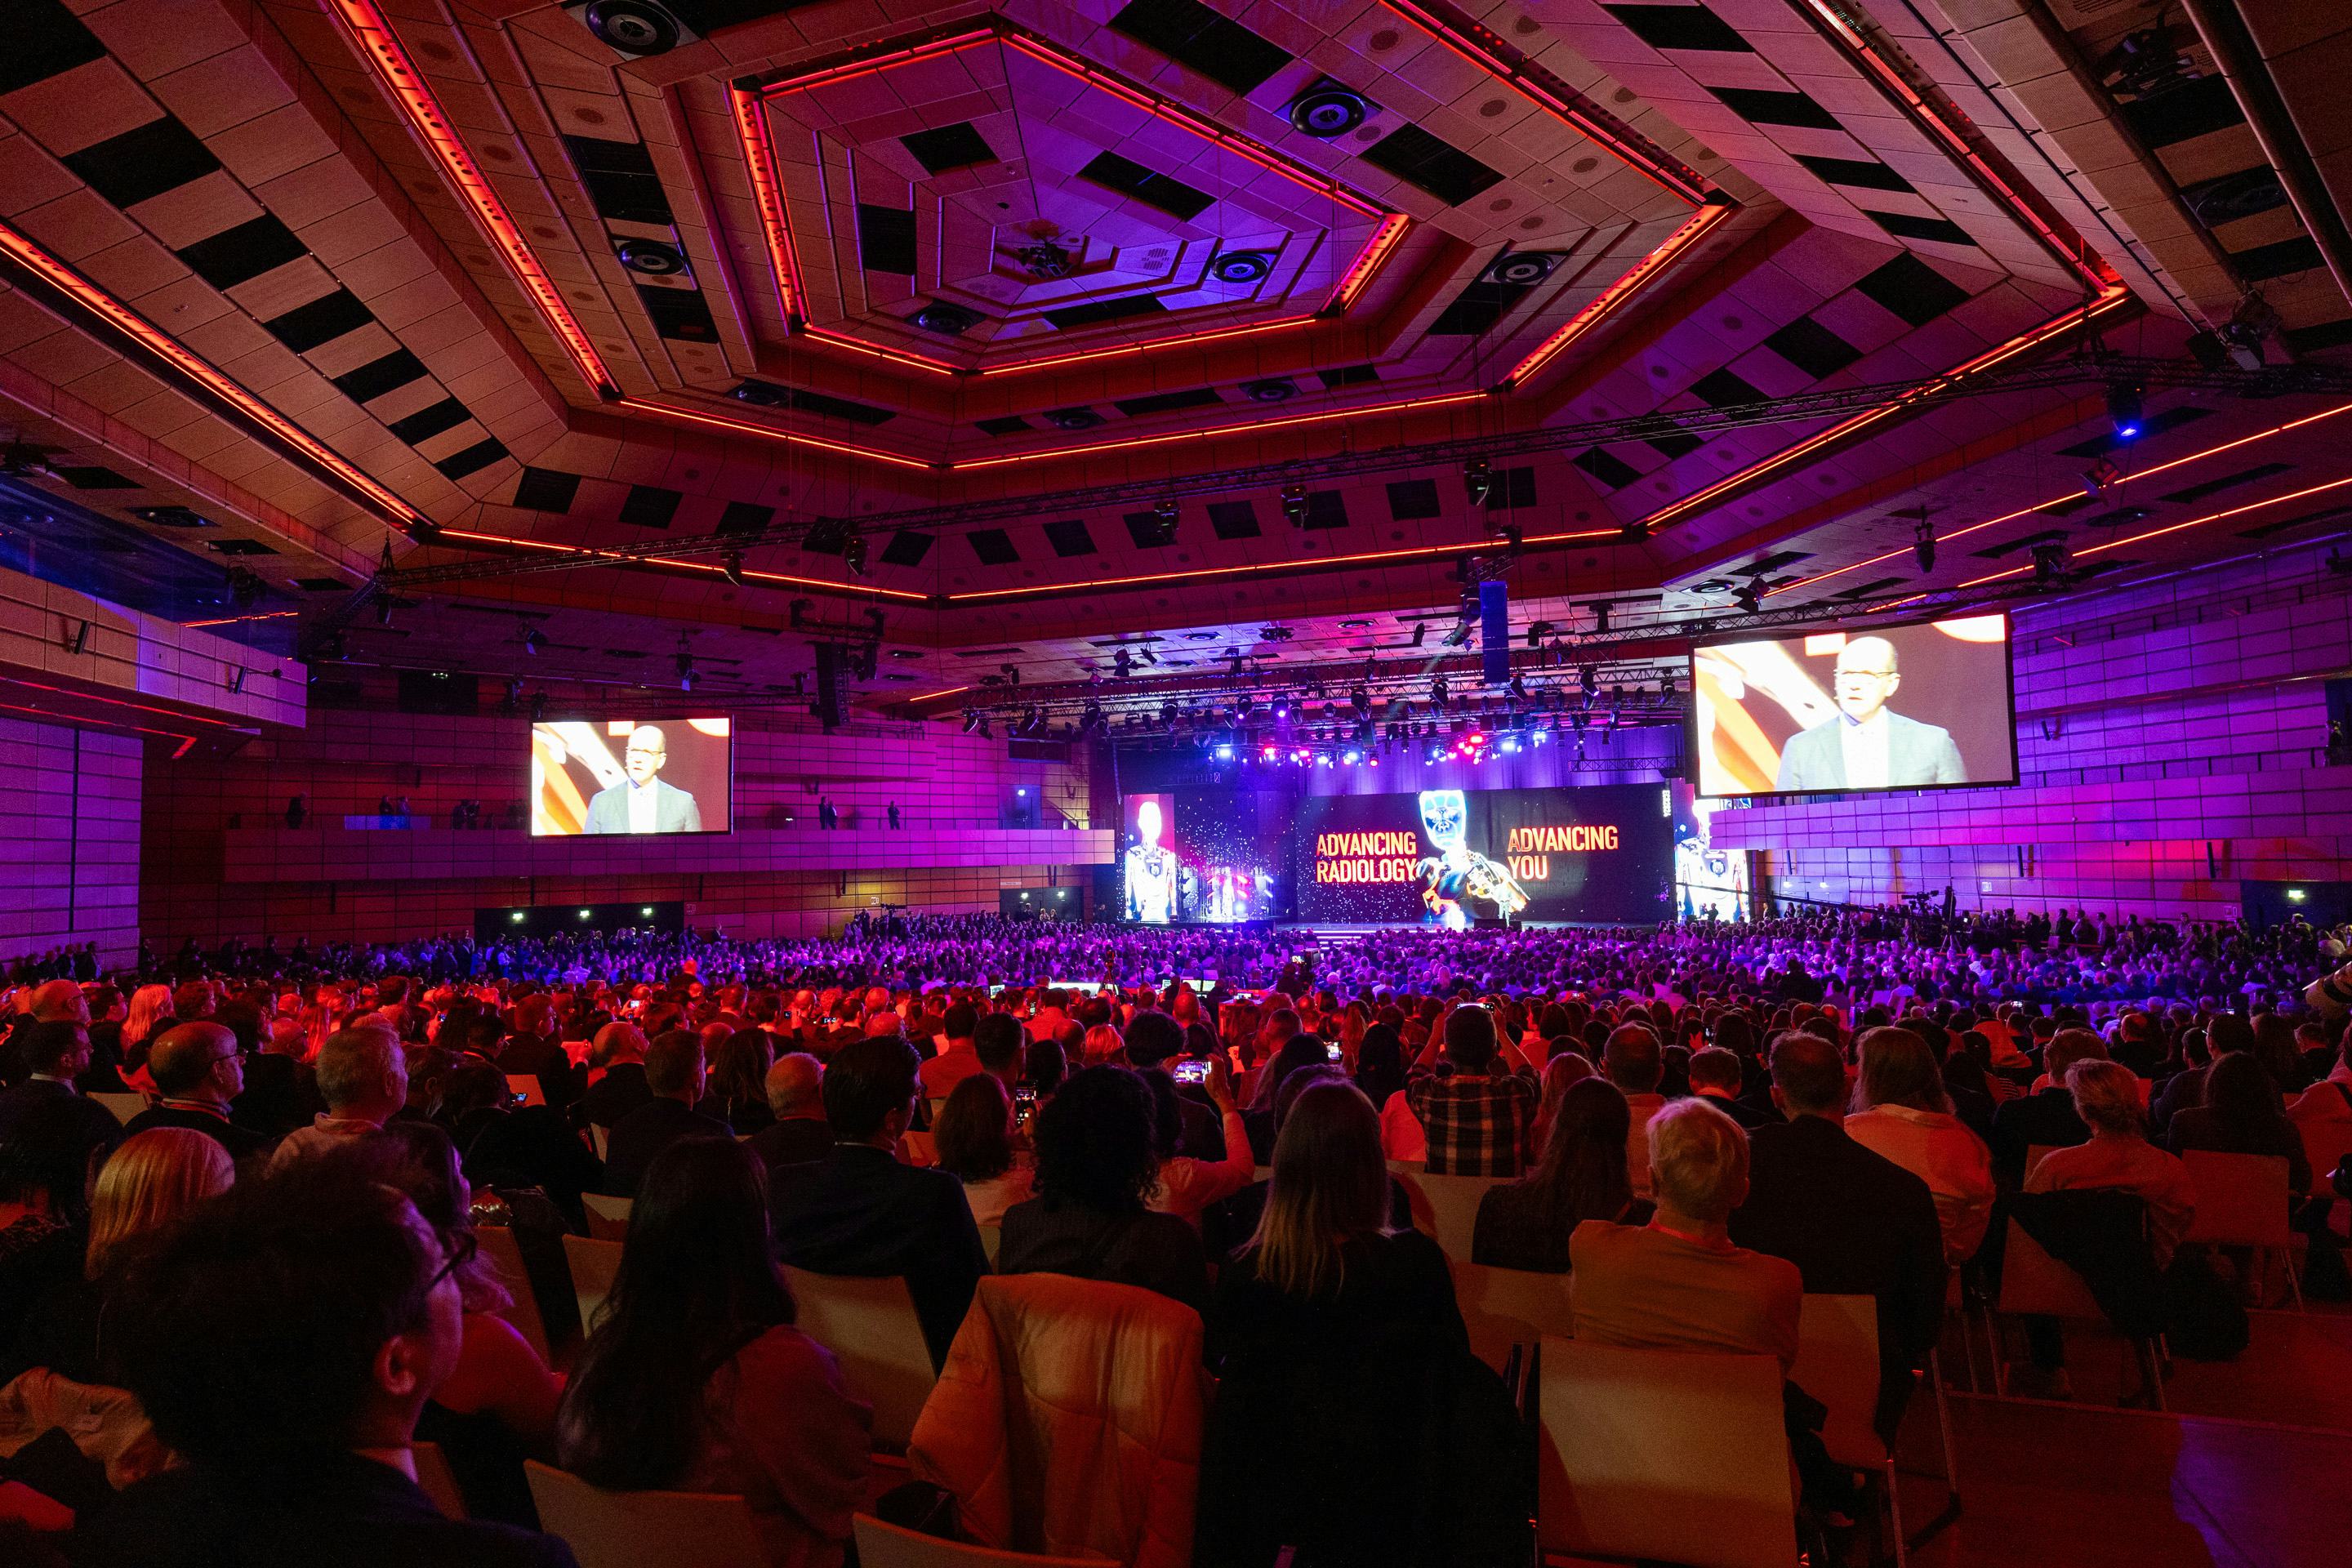 Foto: rot beleuchteter Saal voll sitzender Menschen, die einem Moderator auf der Buehne zuhoeren.